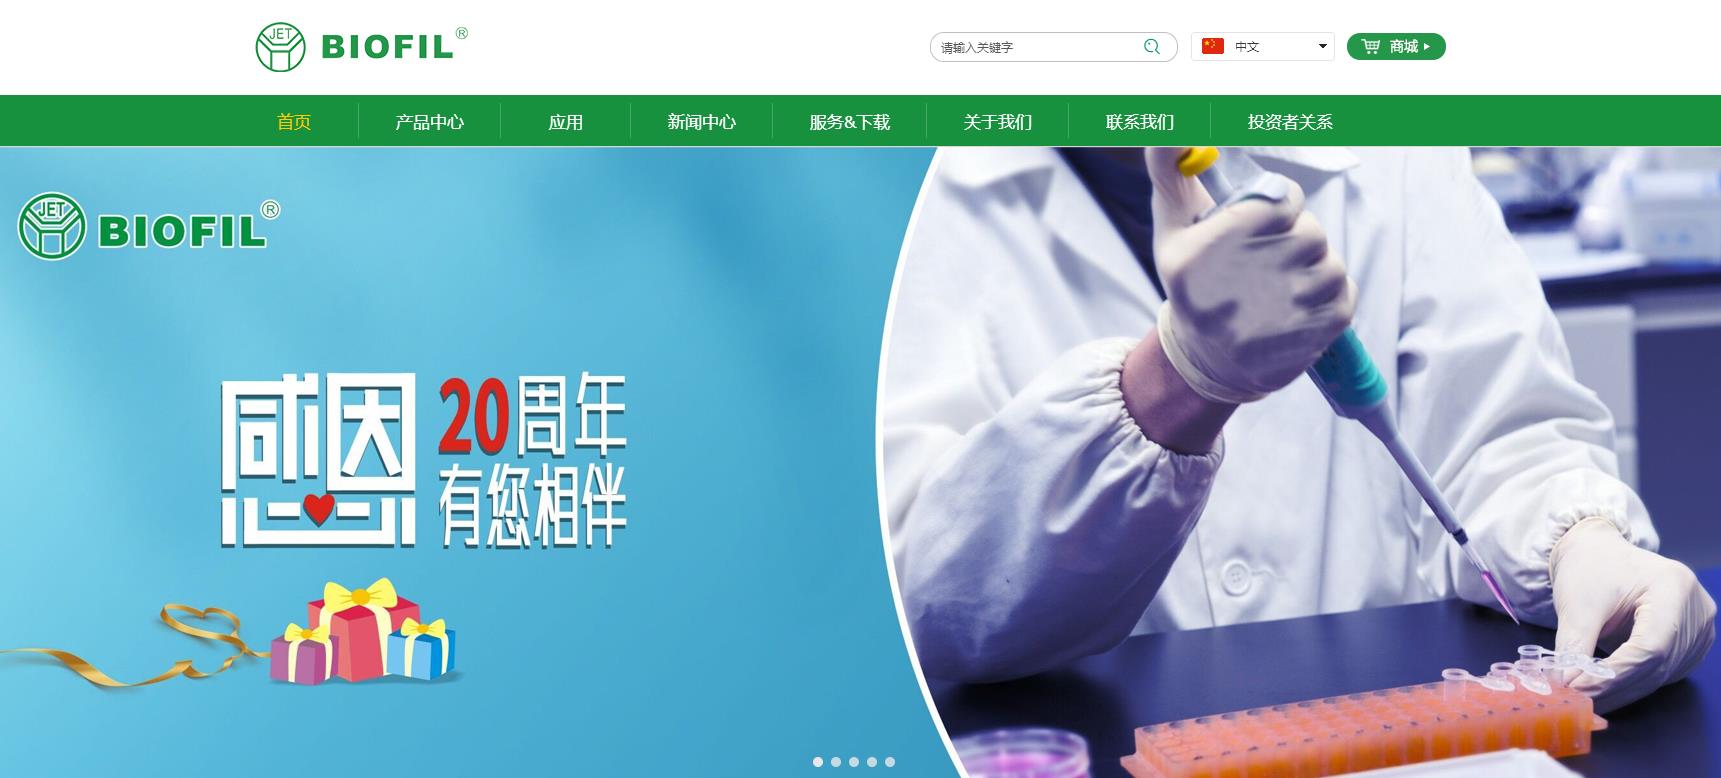 广州洁特生物实验室室耗材新产品研发智能制造项目